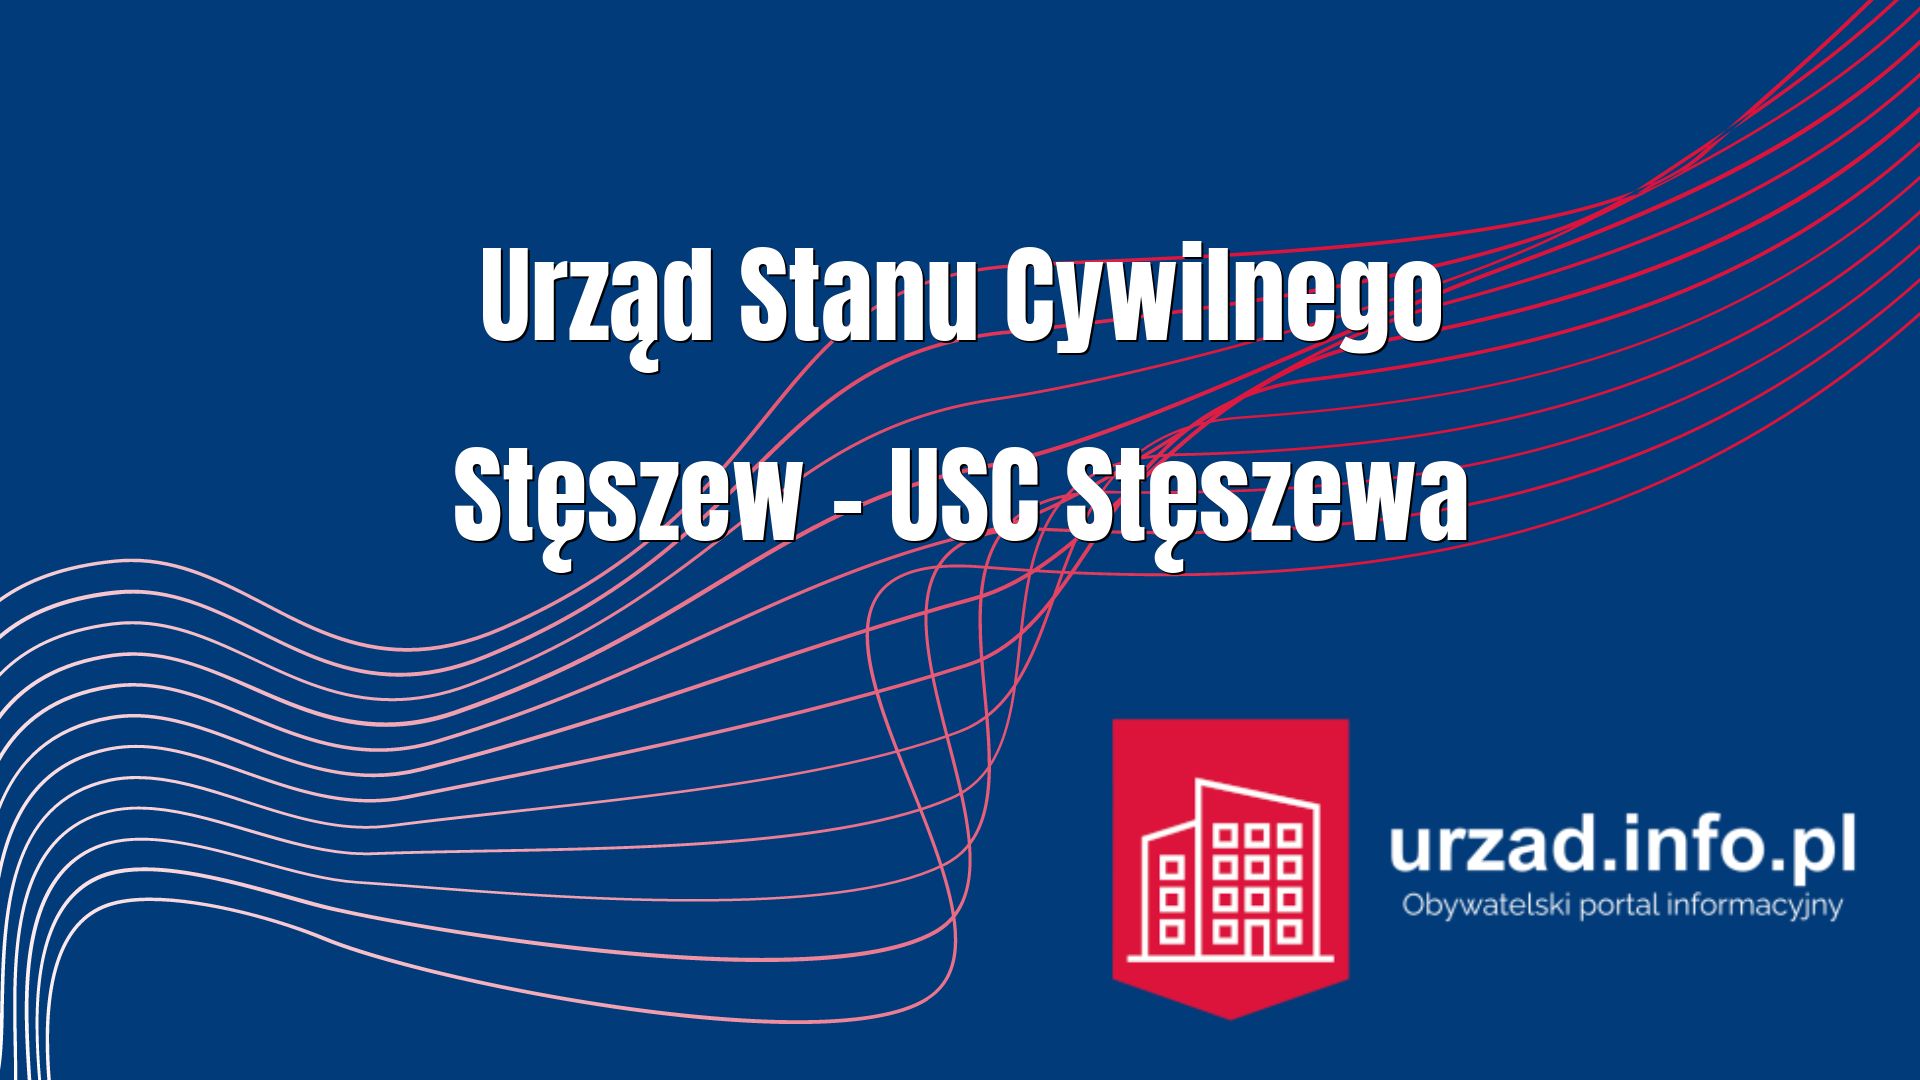 Urząd Stanu Cywilnego Stęszew – USC Stęszewa